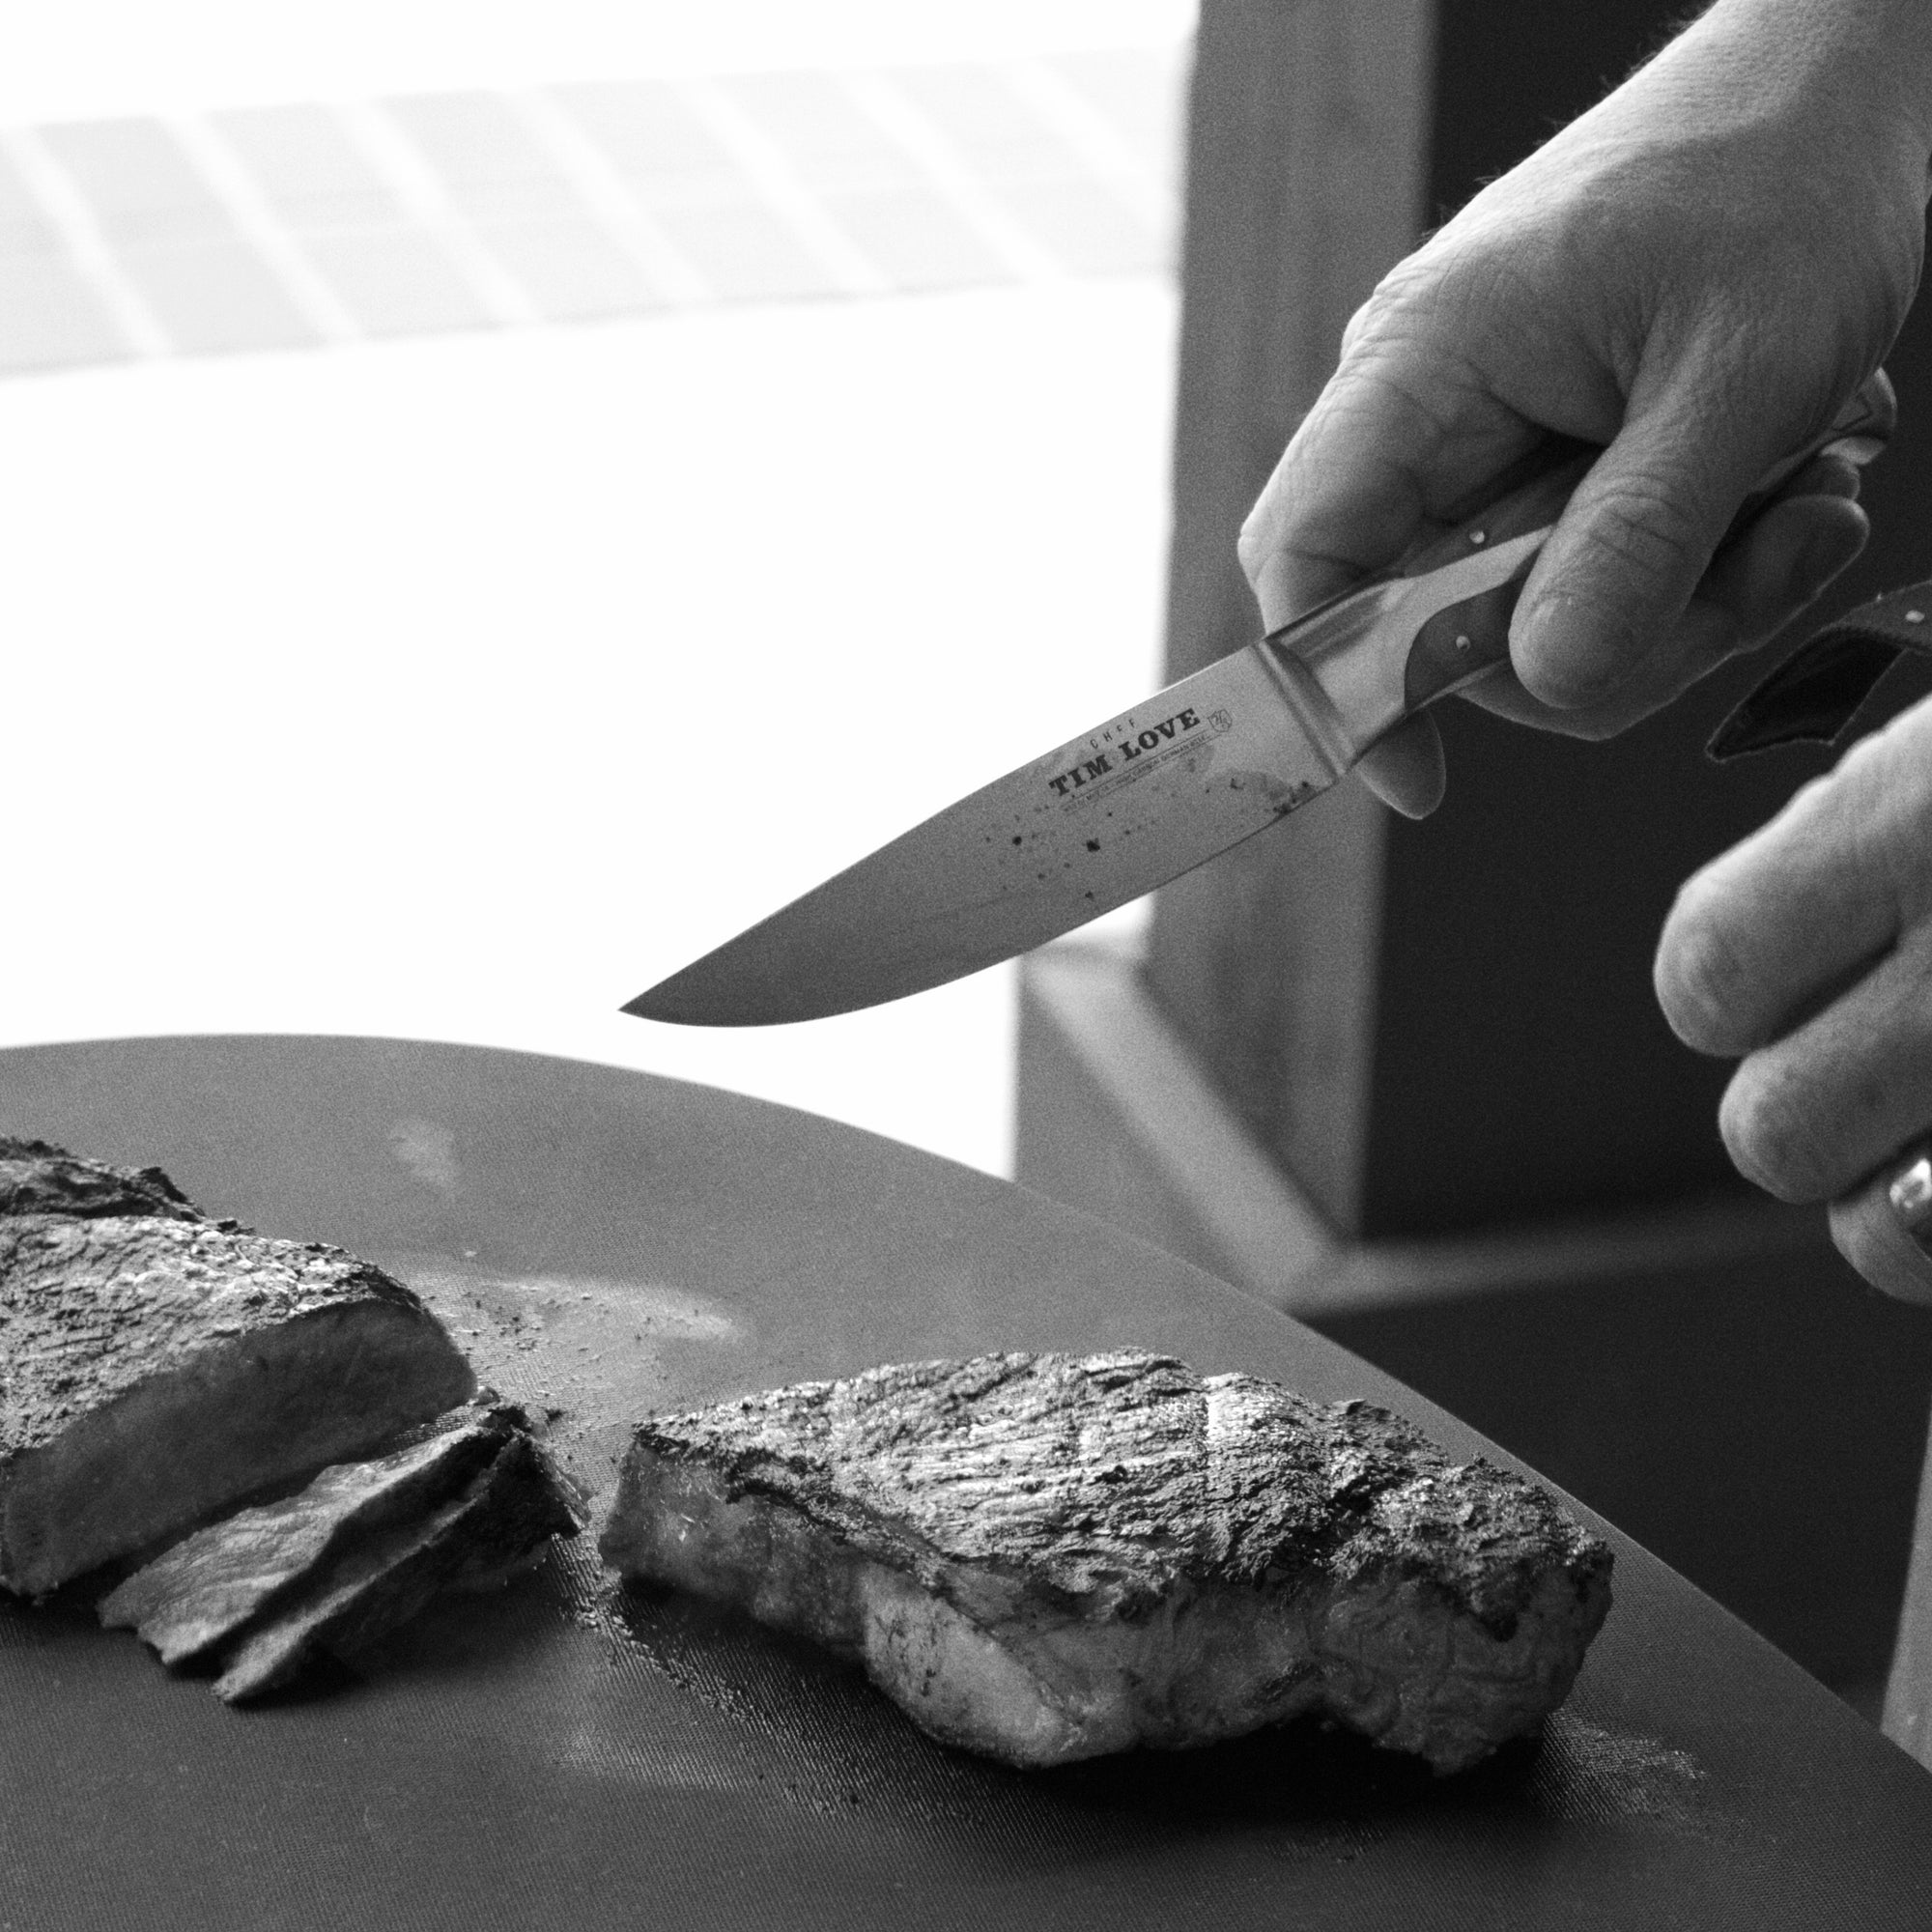 Rosewood Steak Knives – Atomic 79